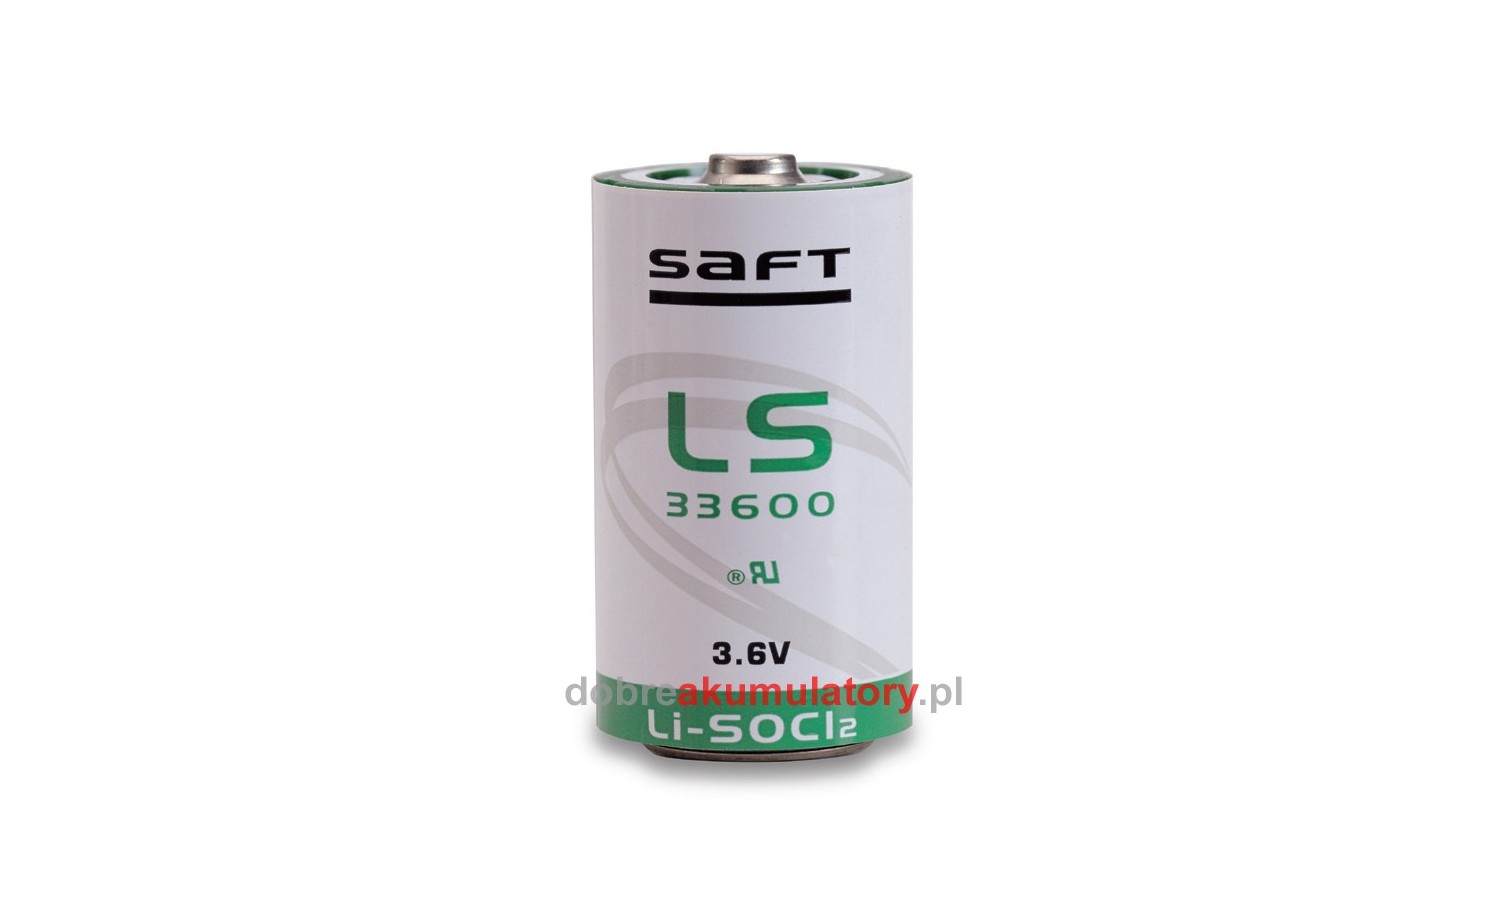 Bateria SAFT LS33600  3.6V - 17Ah